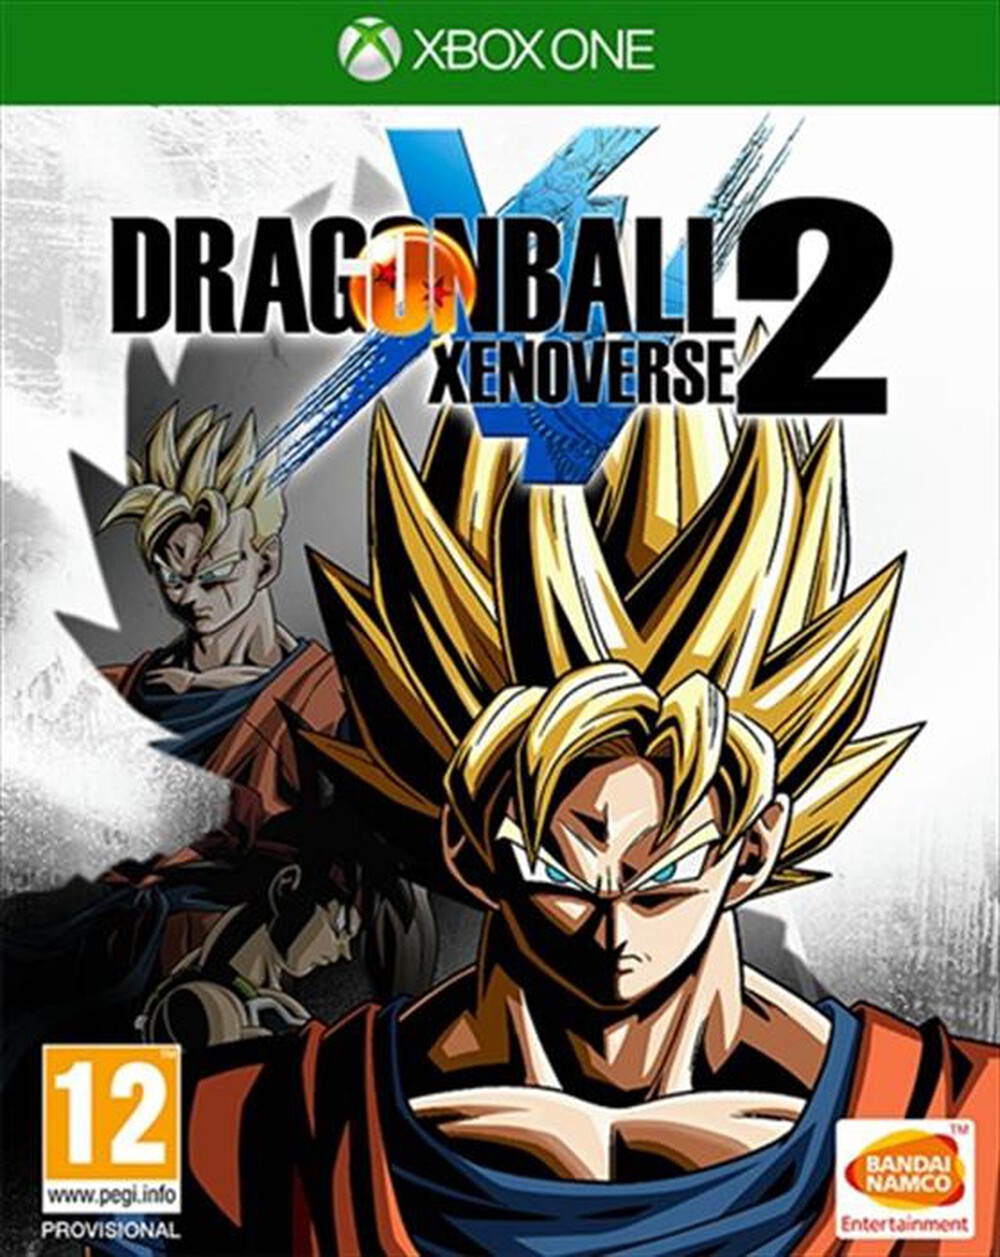 "NAMCO - Dragon Ball 2 Xenoverse 2 Xbox One"